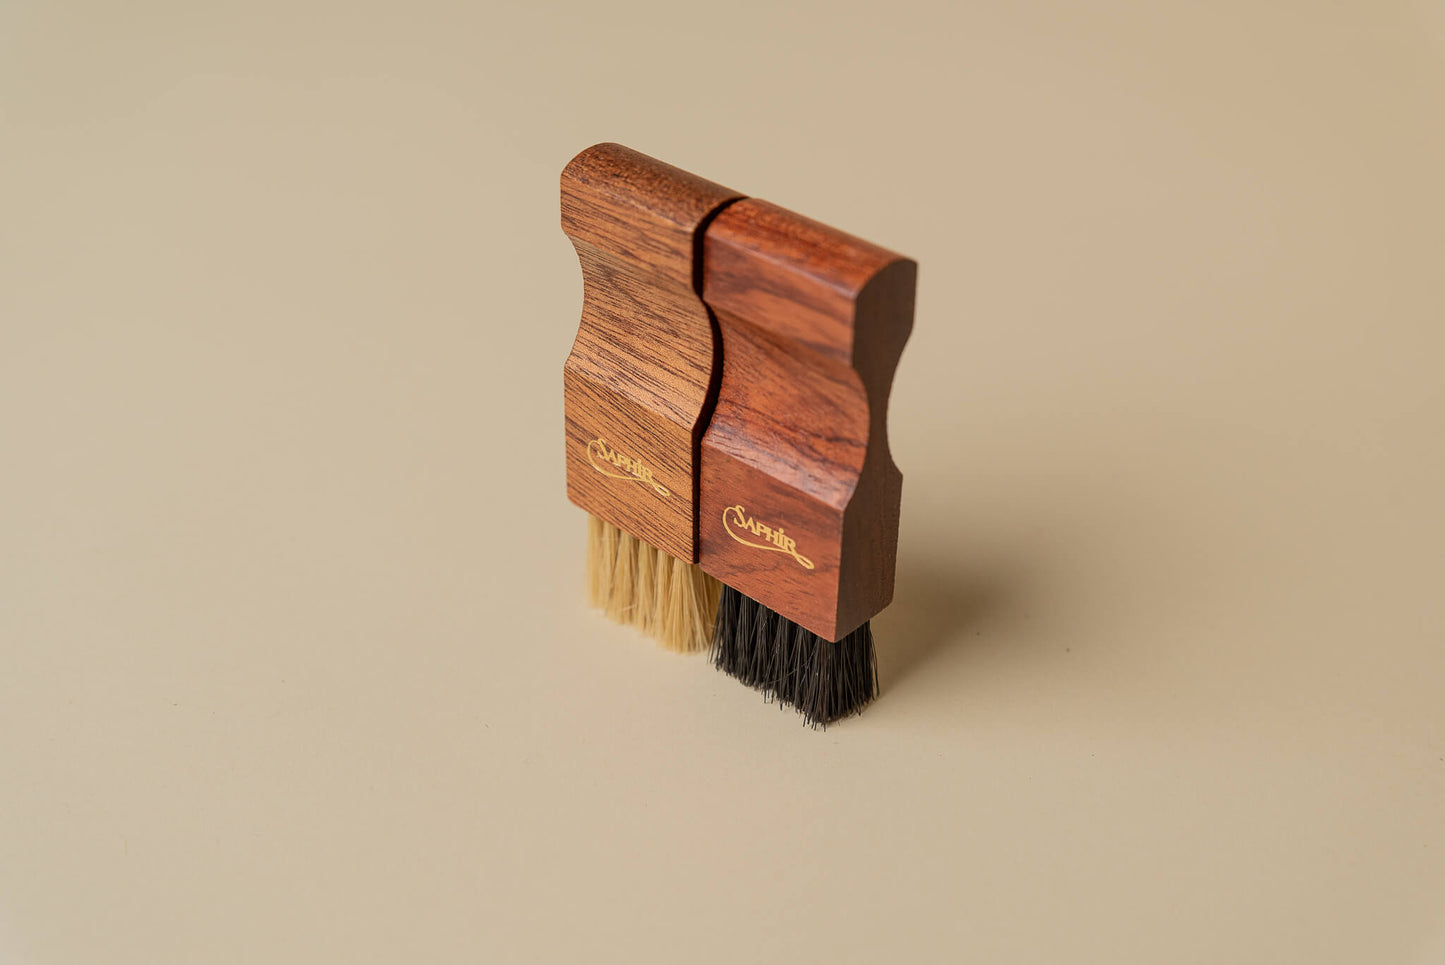 Saphir Medaille d'Or 1925 Wood Small Dauber Applicator Horse Hair Brush 3.5" - Brillare 4